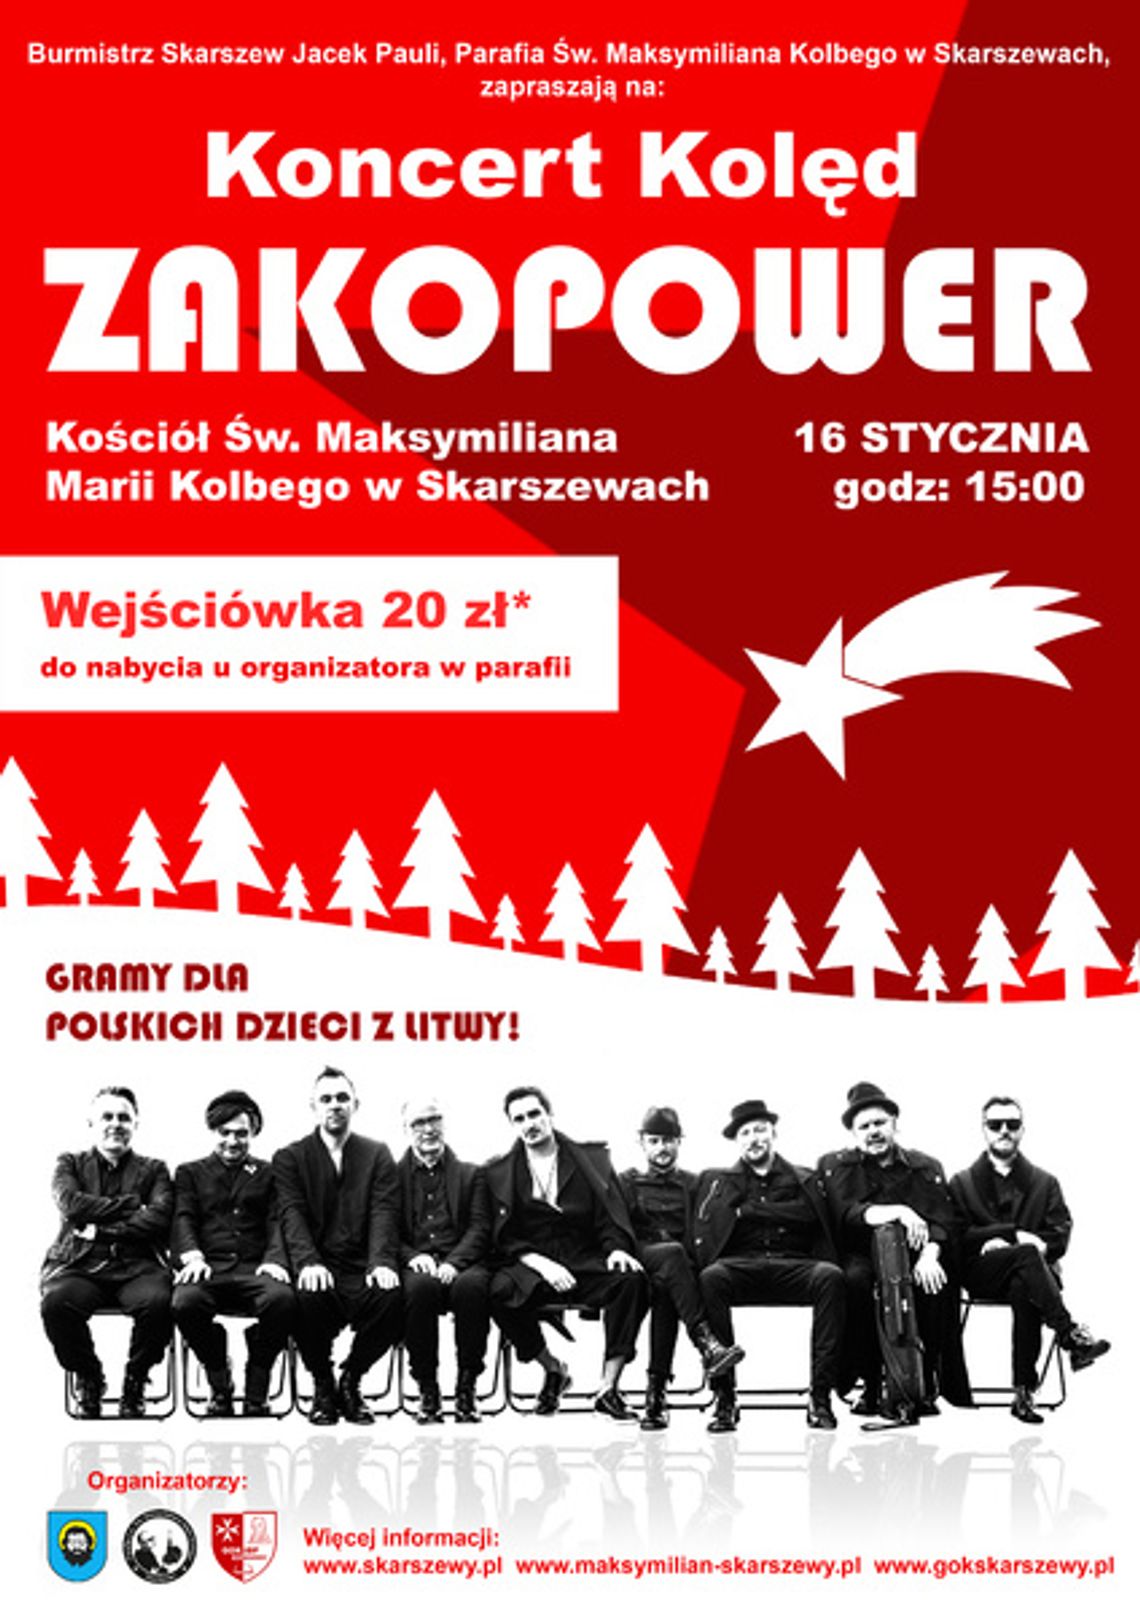 Wielkie kolędowanie z zespołem Zakopower w Skarszewach